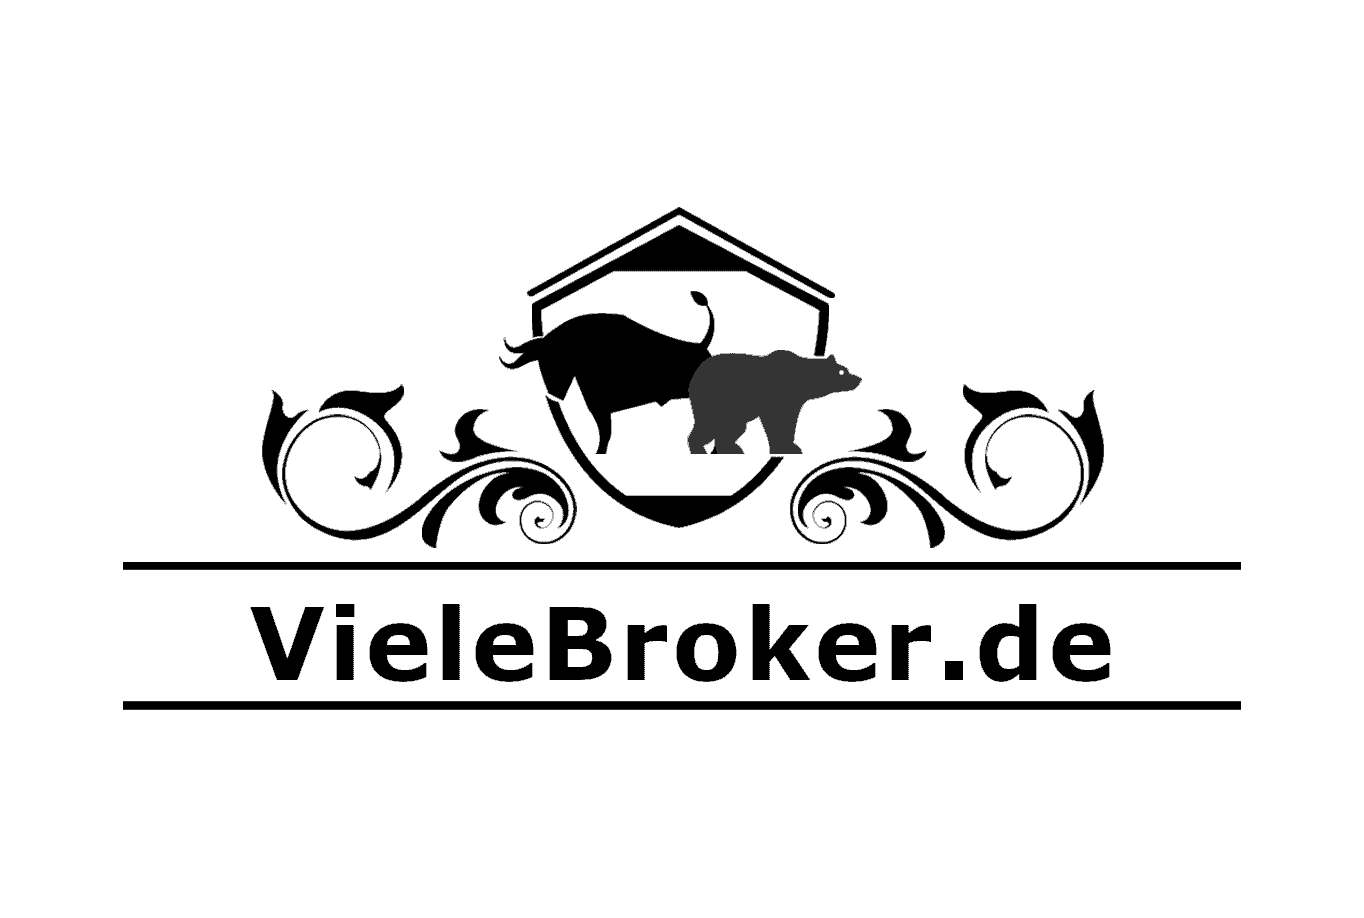 Online Broker Vergleich fÃ¼r Deutschland auf VieleBroker.de